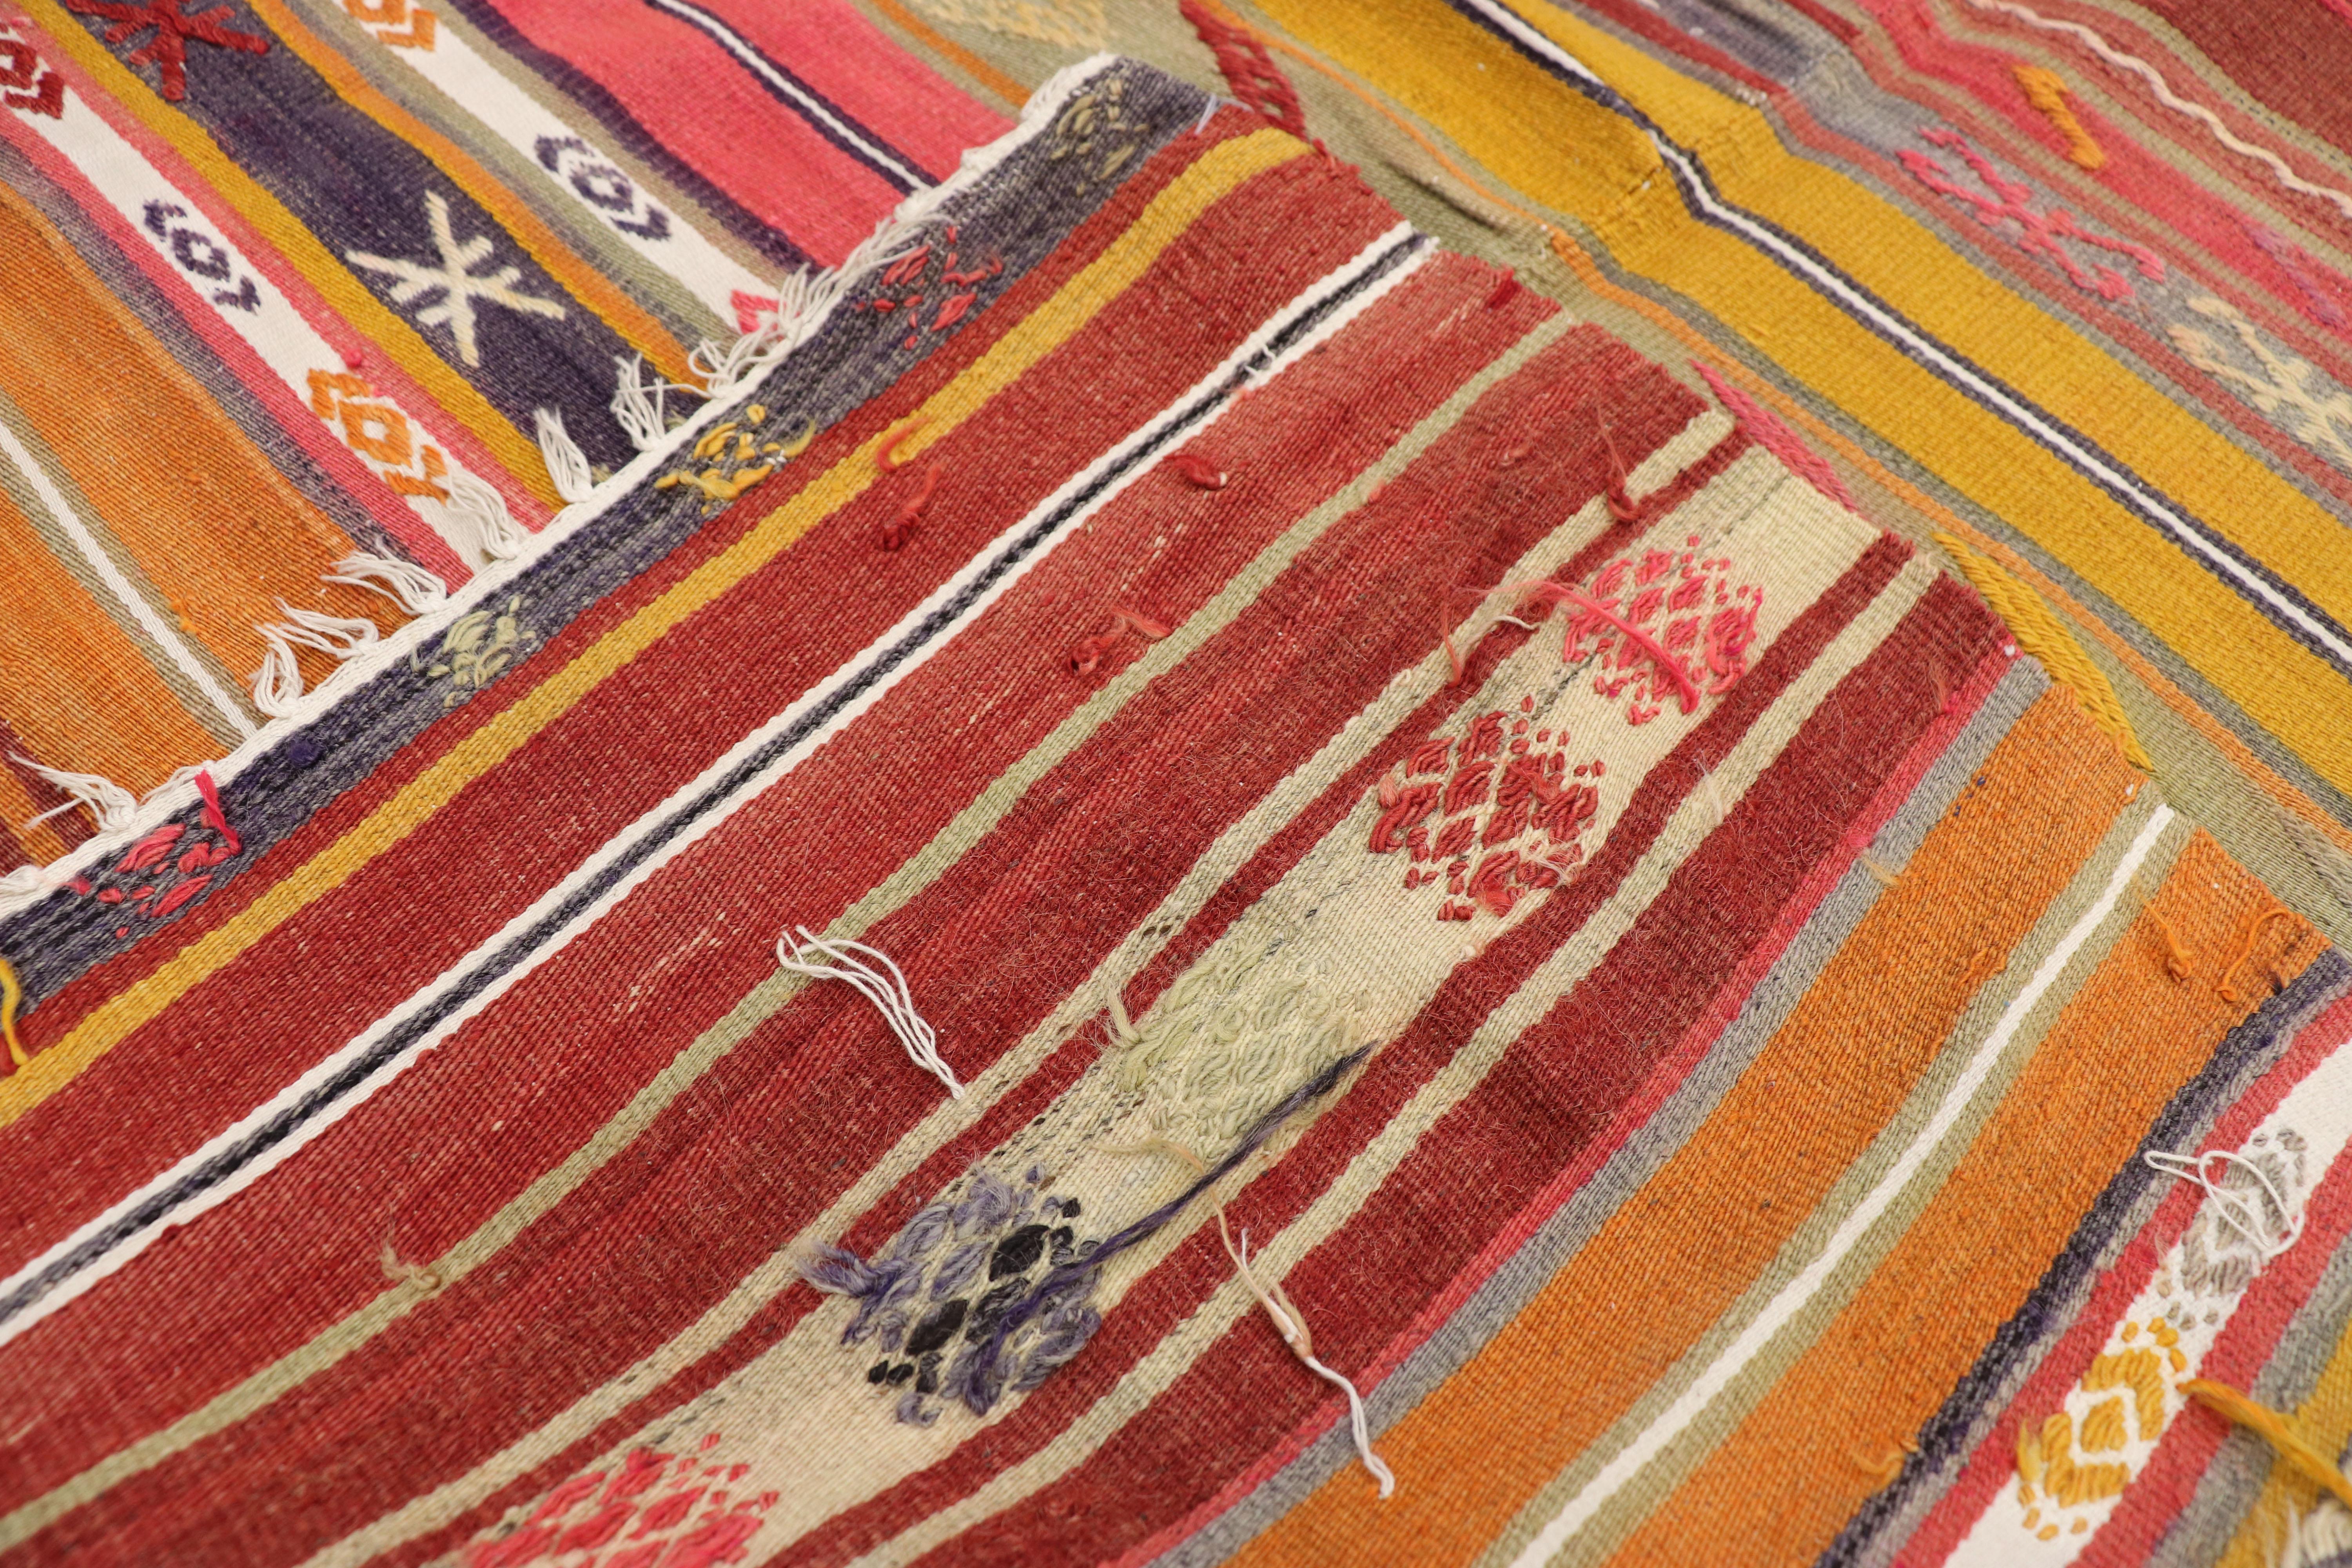 20th Century Southwest Boho Chic Vintage Turkish Kilim Rug, Flat-Weave Kilim